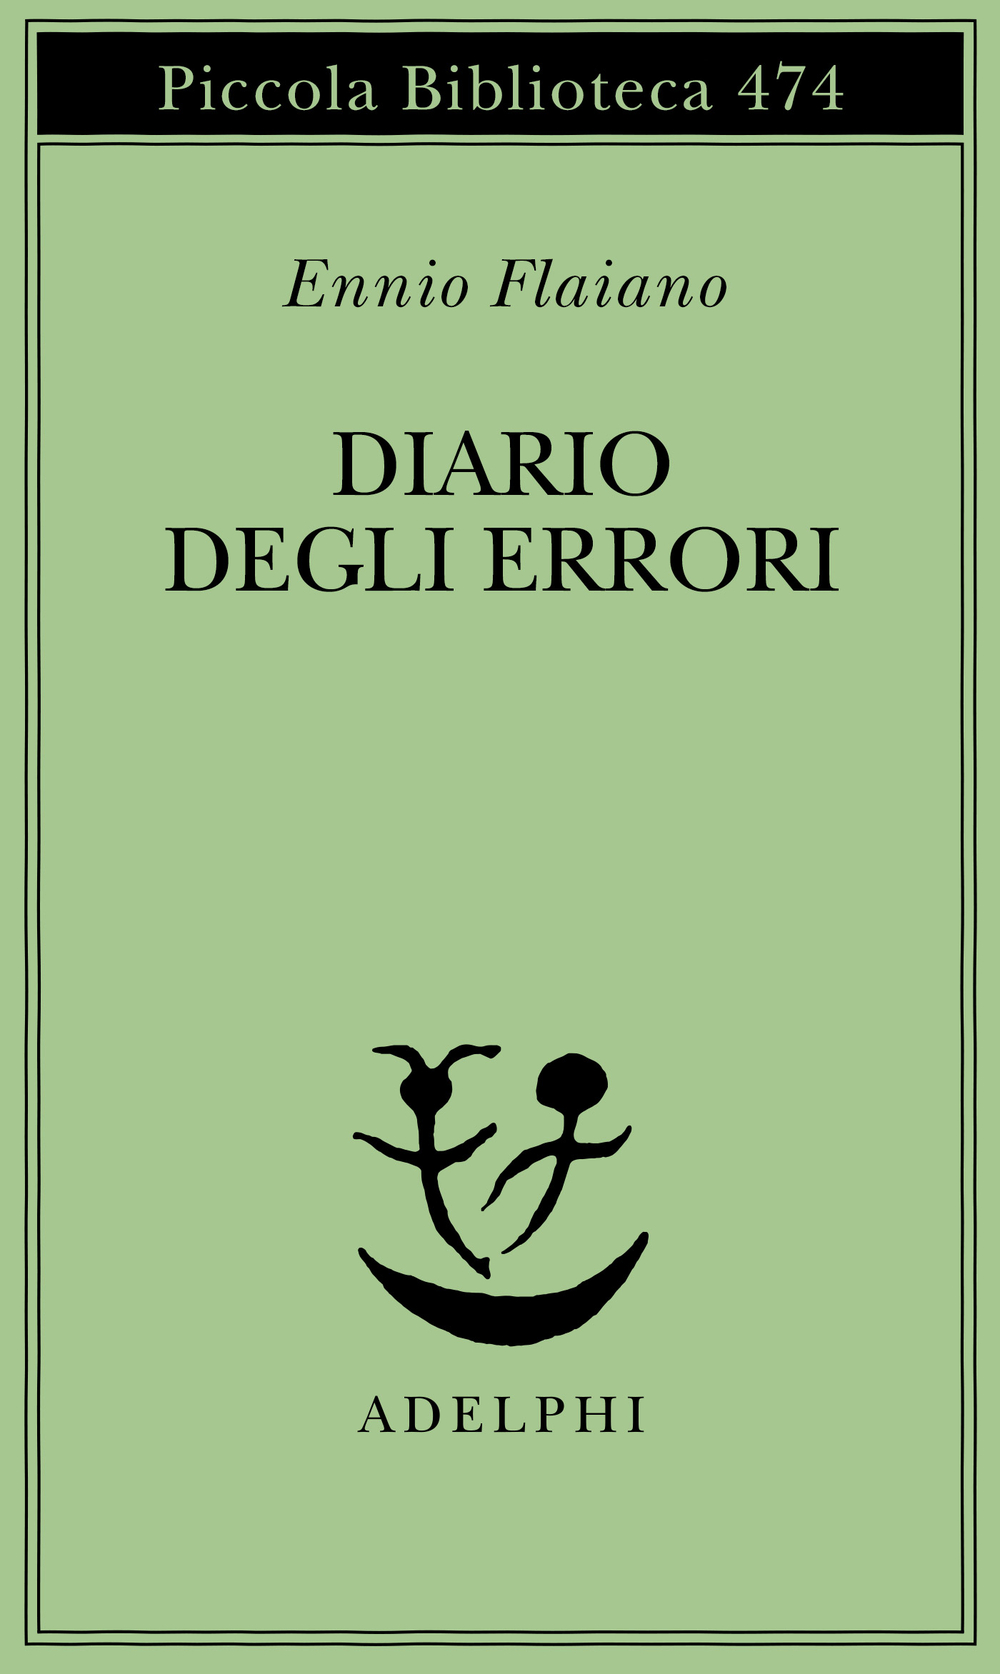 Diario degli errori - Ennio Flaiano